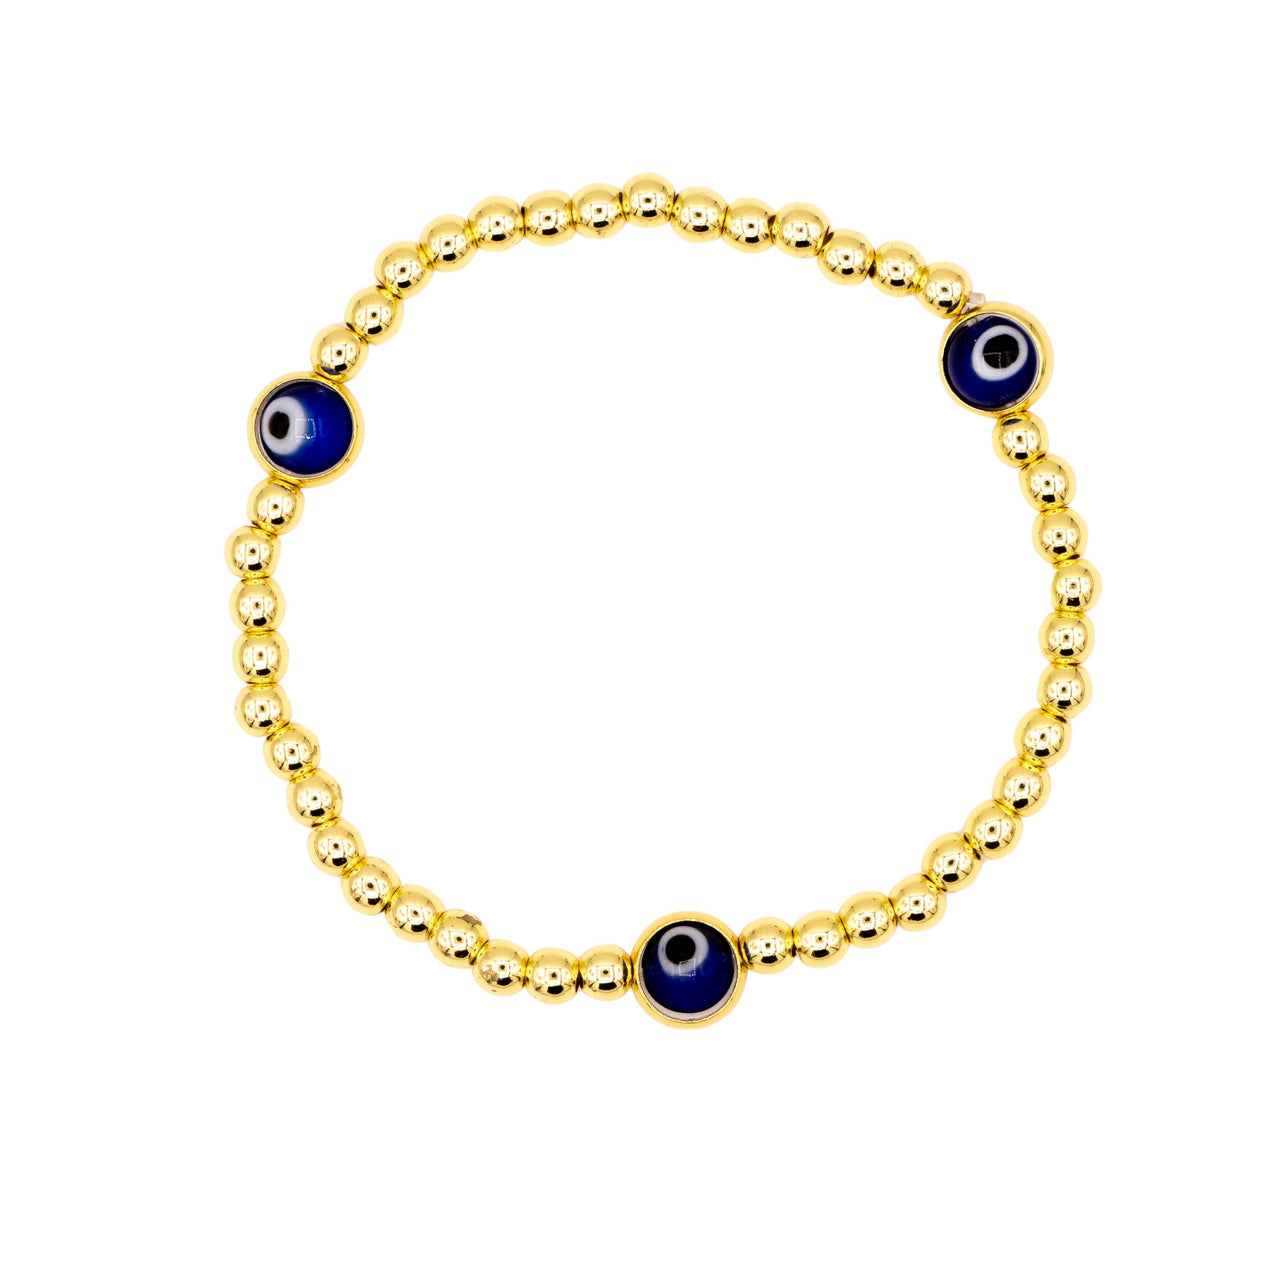 The 4mm Gold and Blue Evil Eye Beaded Bracelet